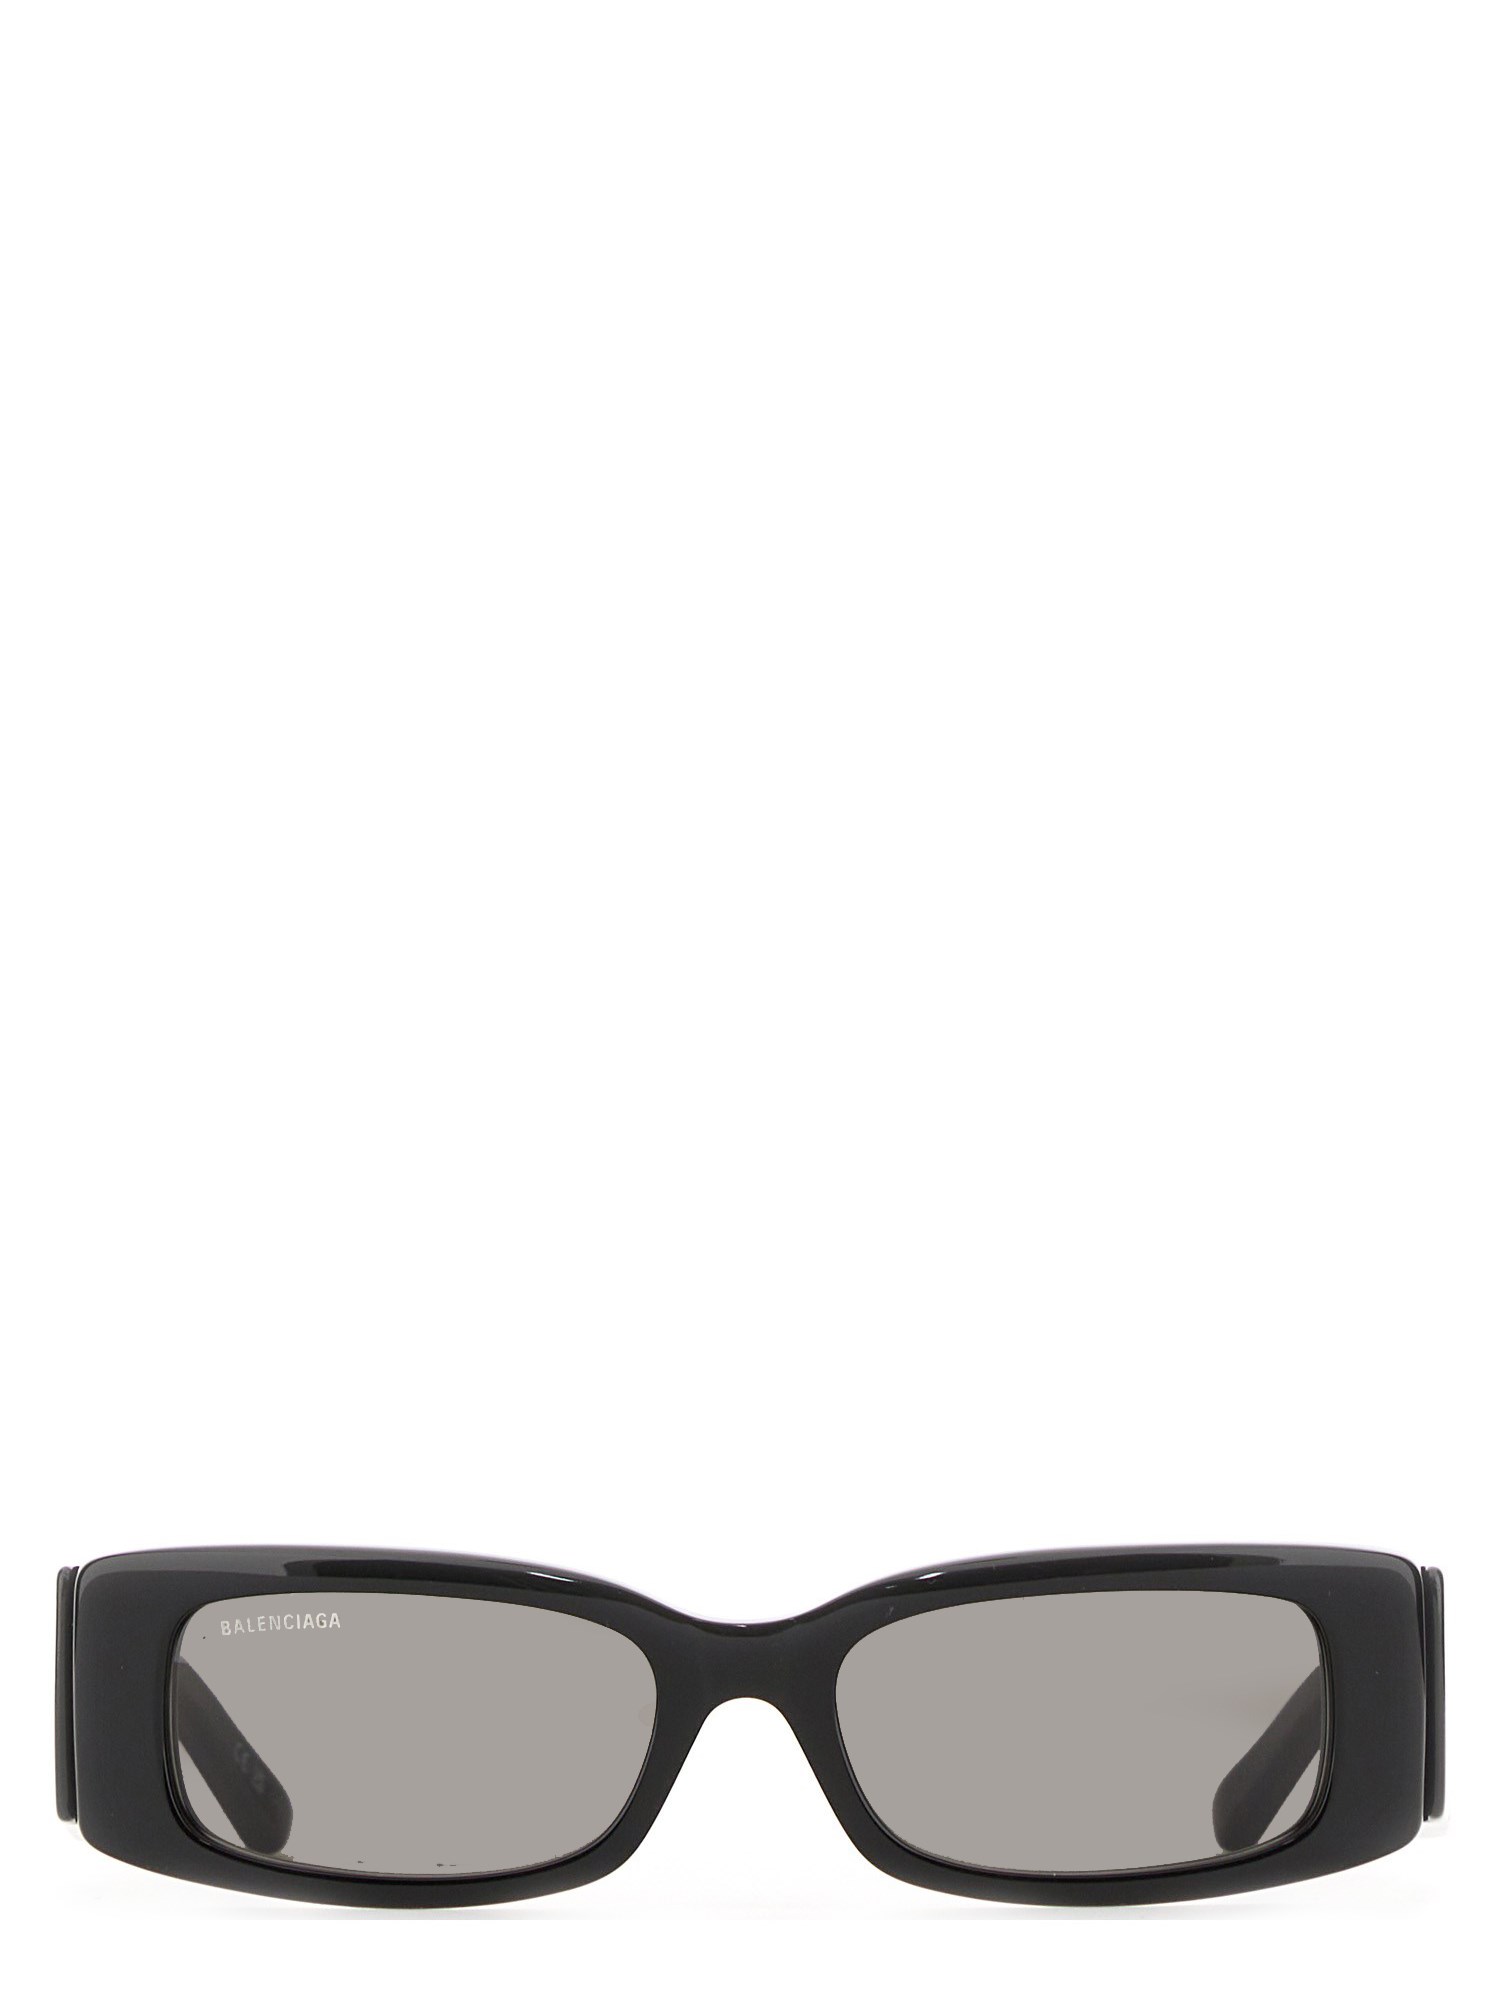 Balenciaga balenciaga max rectangle sunglasses